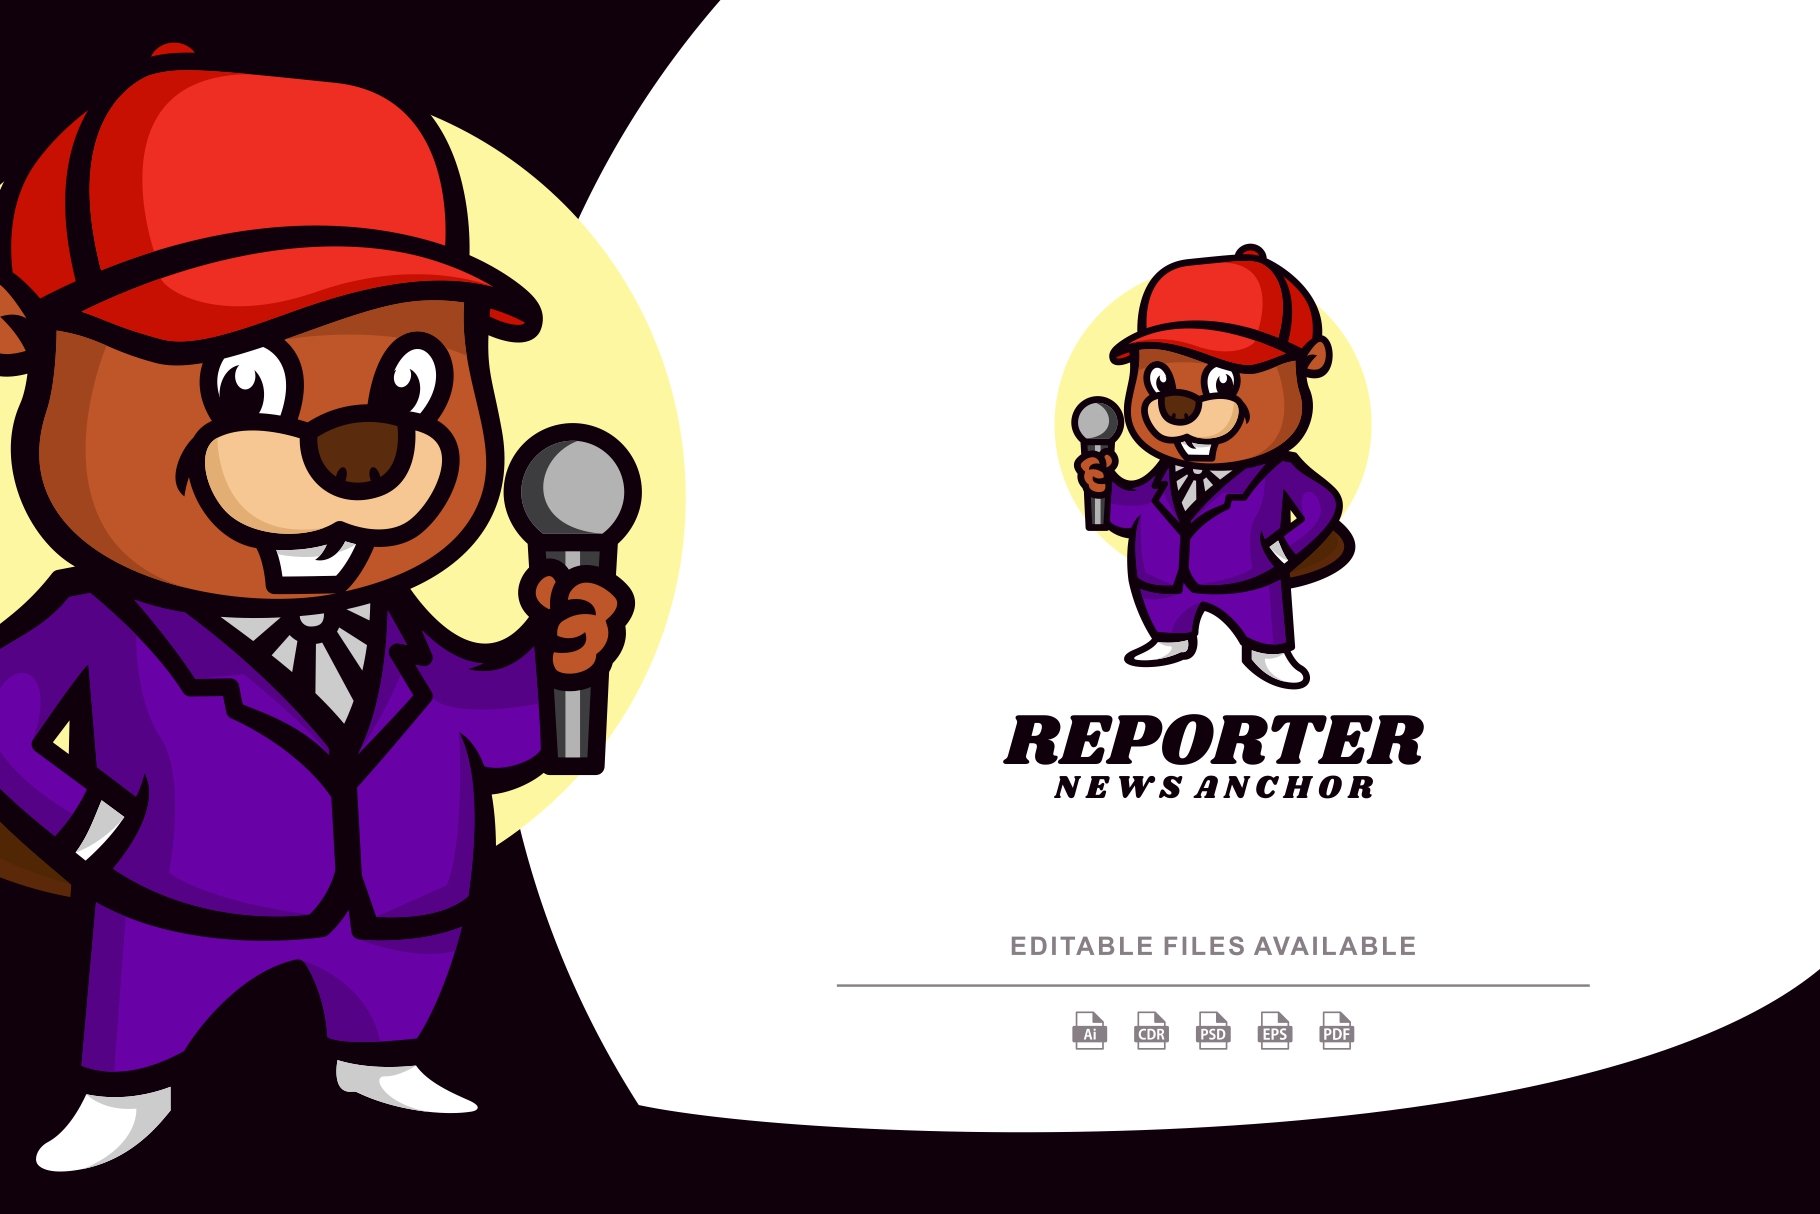 Beaver Reporter Mascot Cartoon Logo cover image.